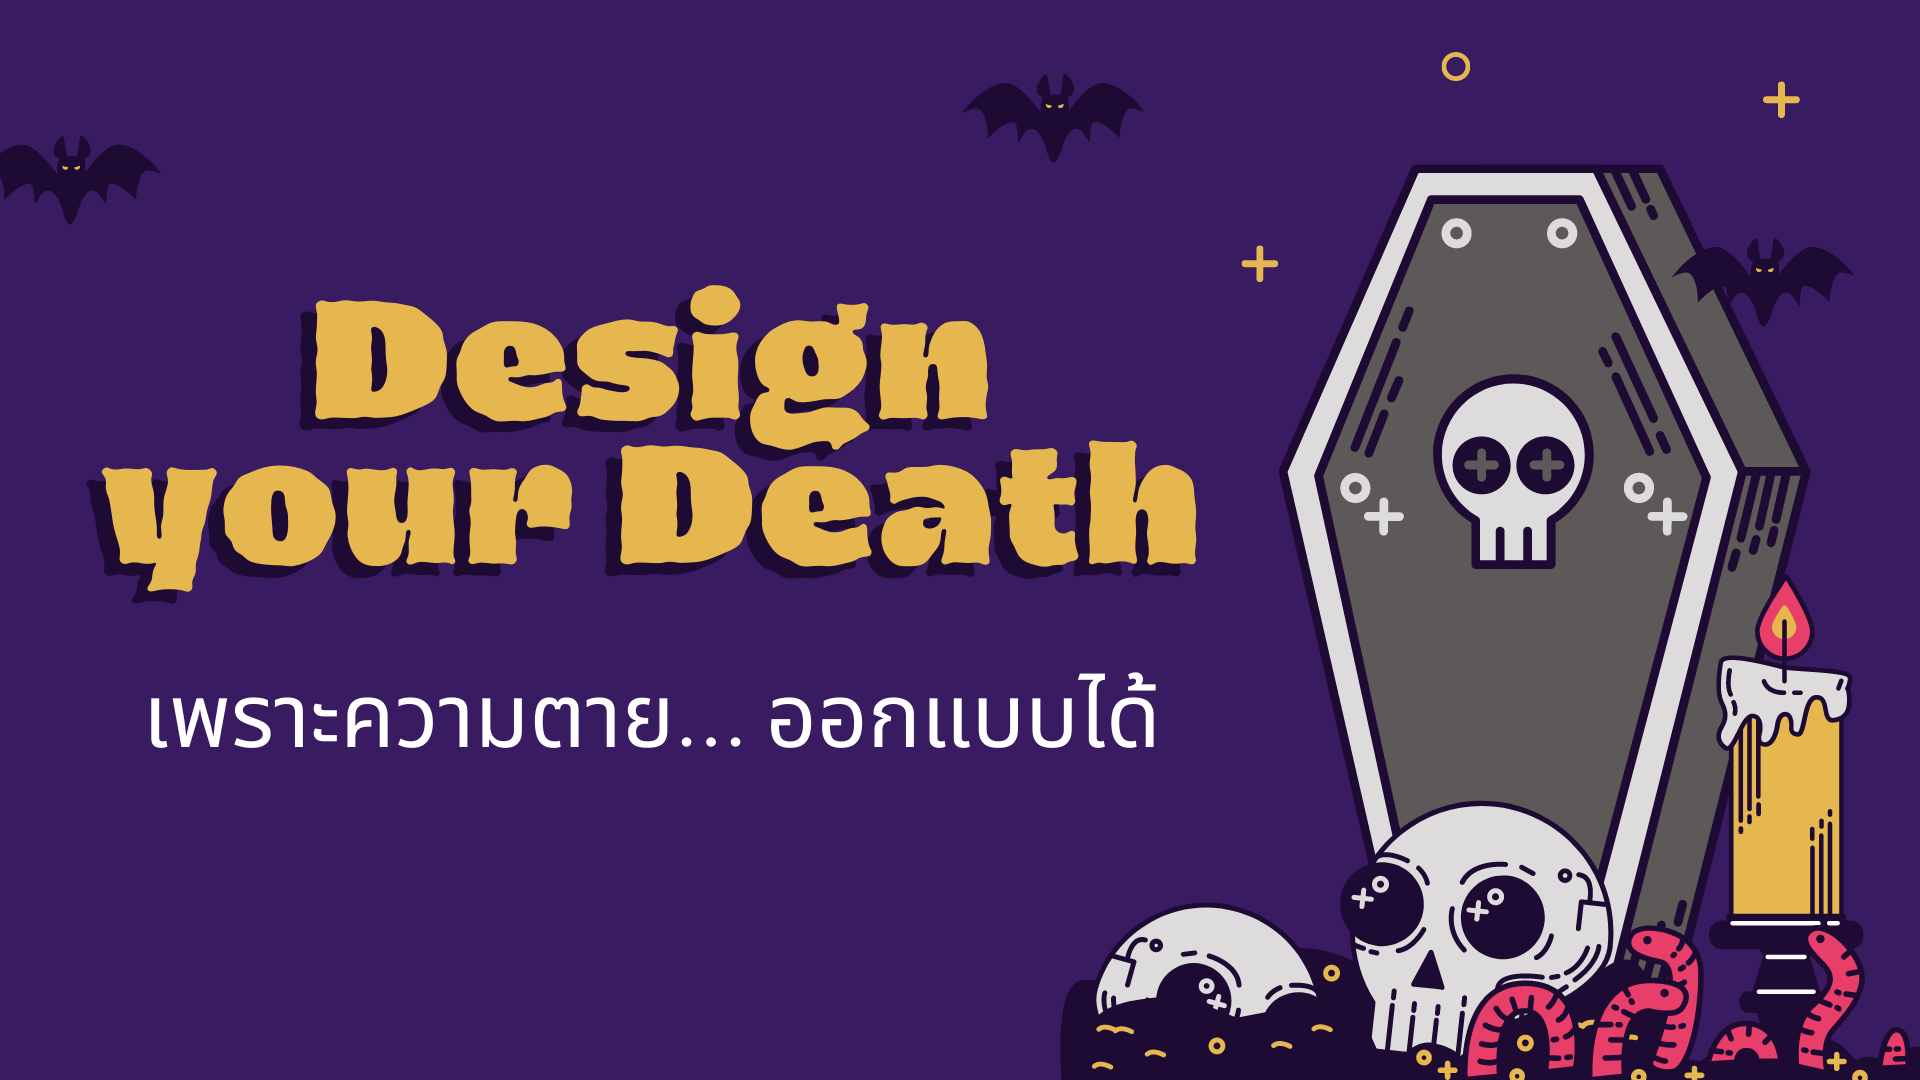 ภาพประกอบไอเดีย กิจกรรมบูรณาการ "Design Your Death เพราะความตาย...ออกแบบได้"